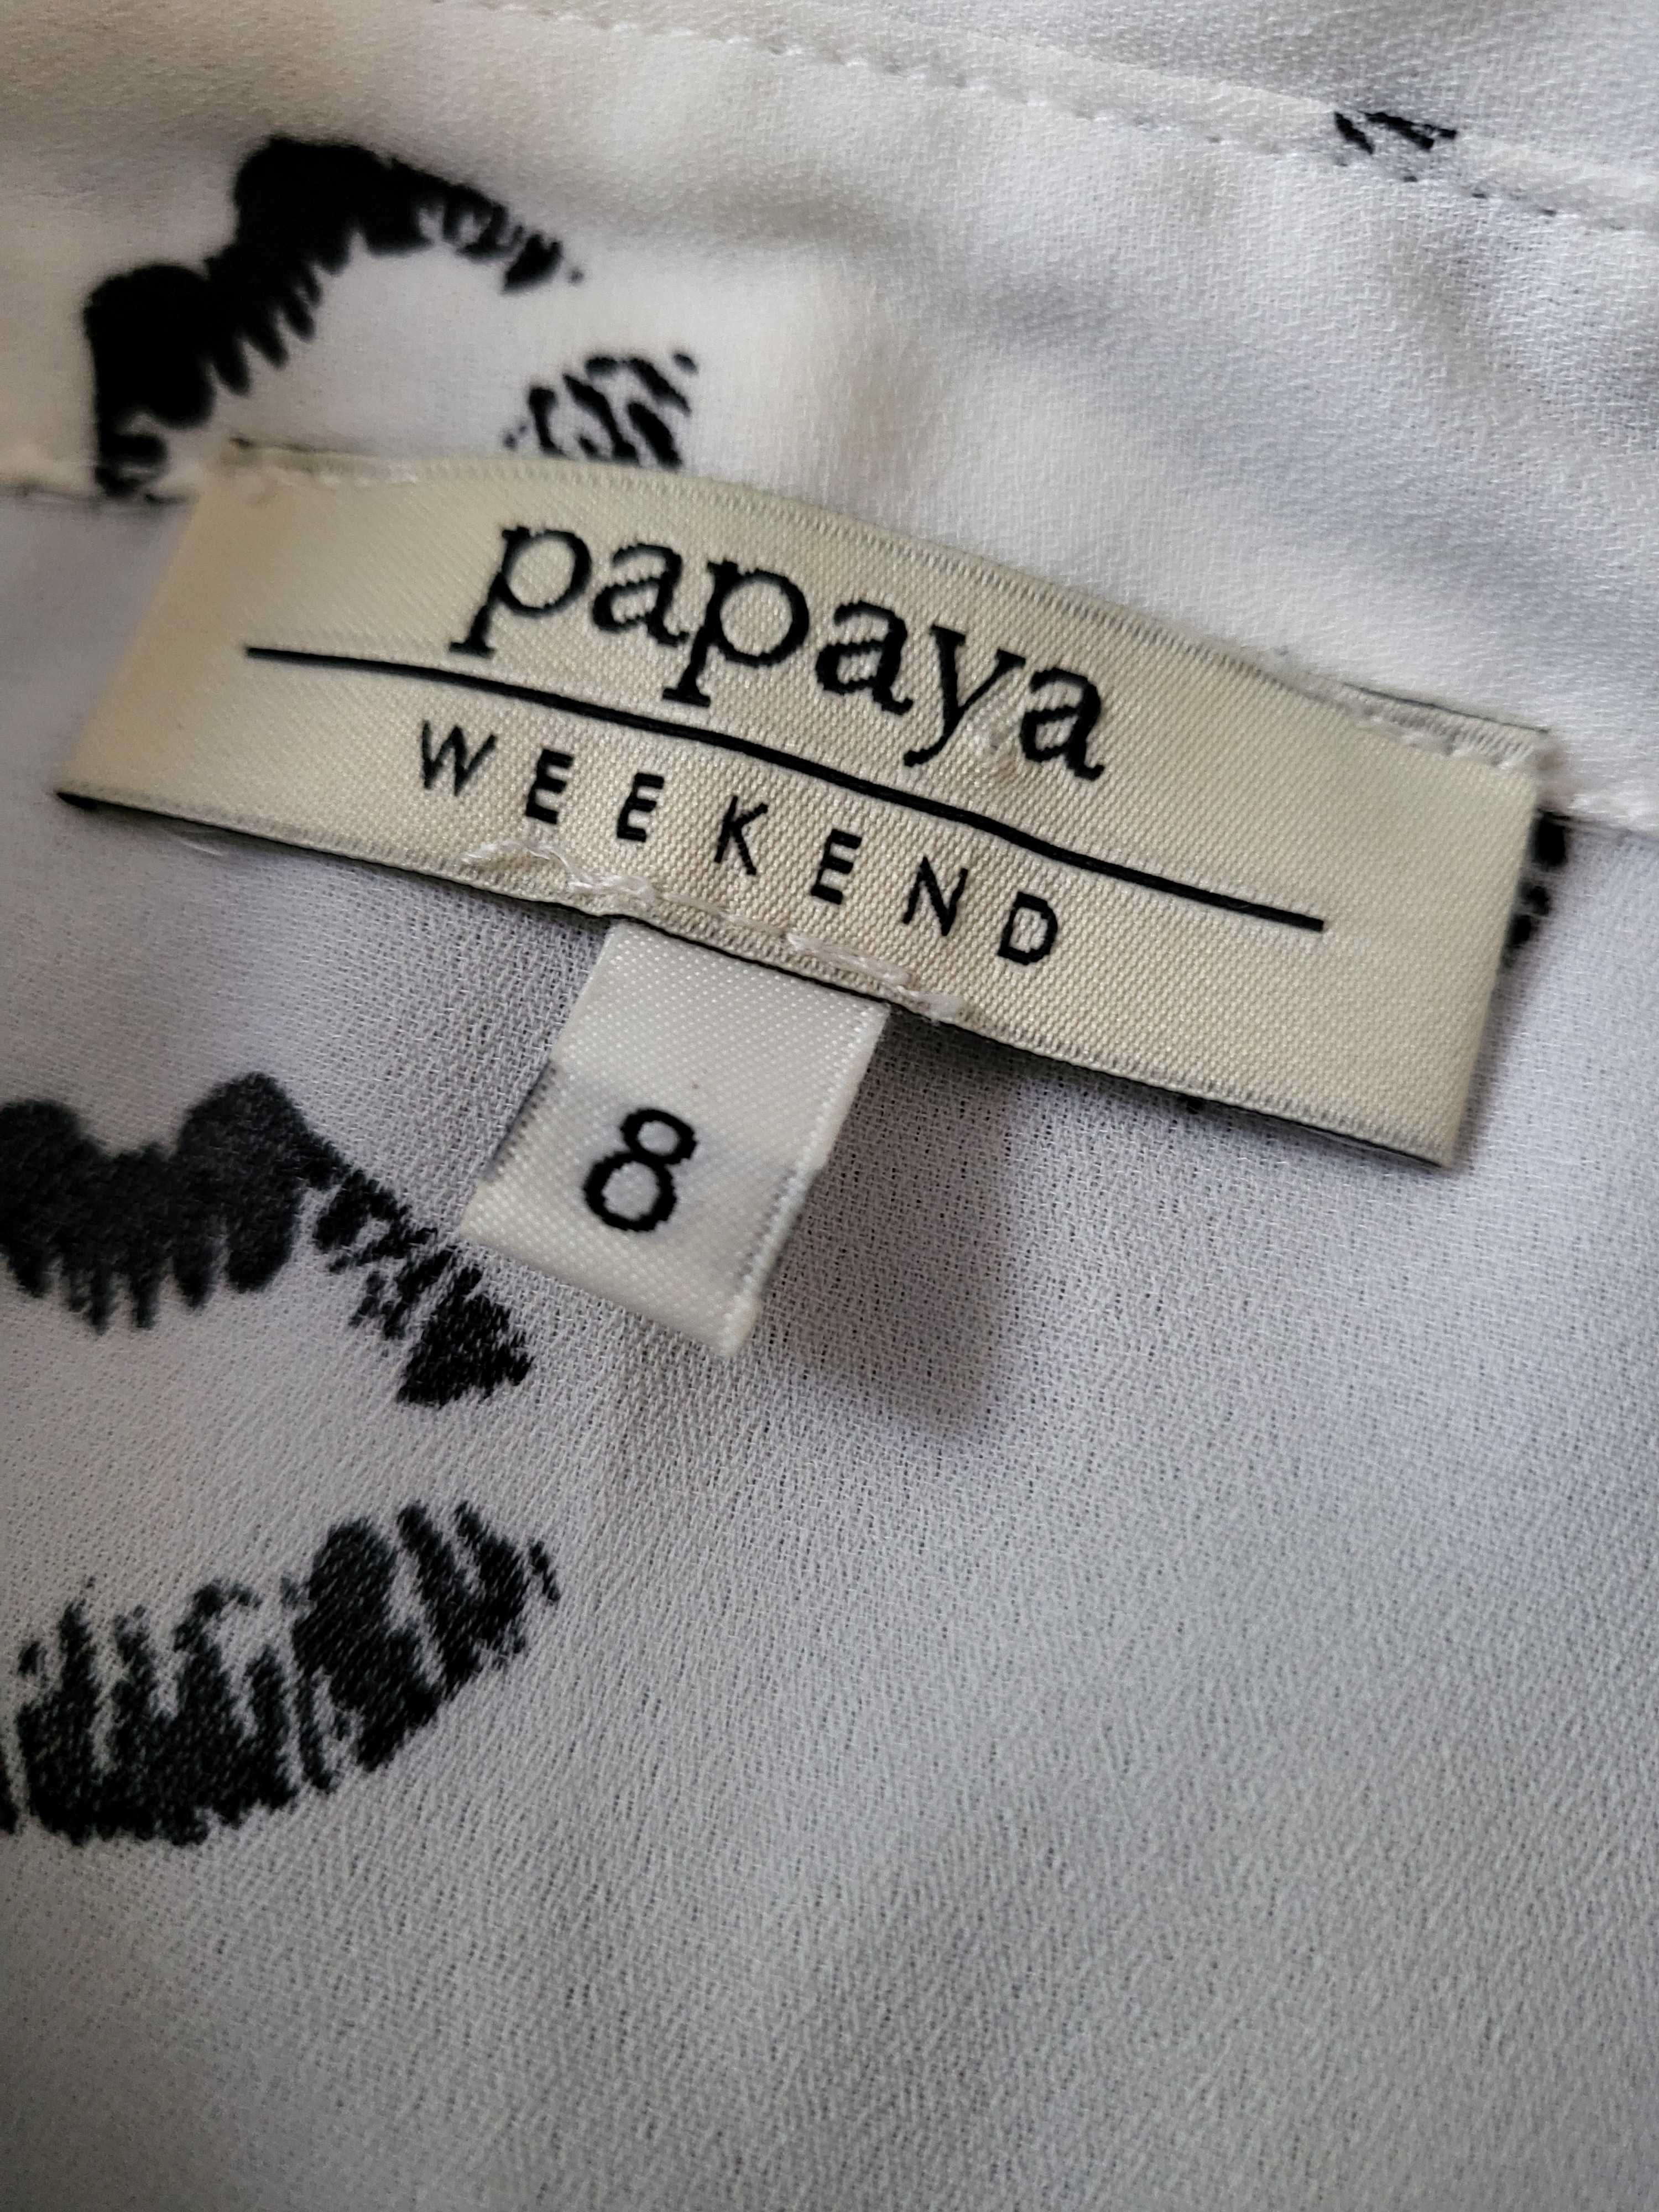 Біла сорочка з поцілунками papaya weekend 8р.